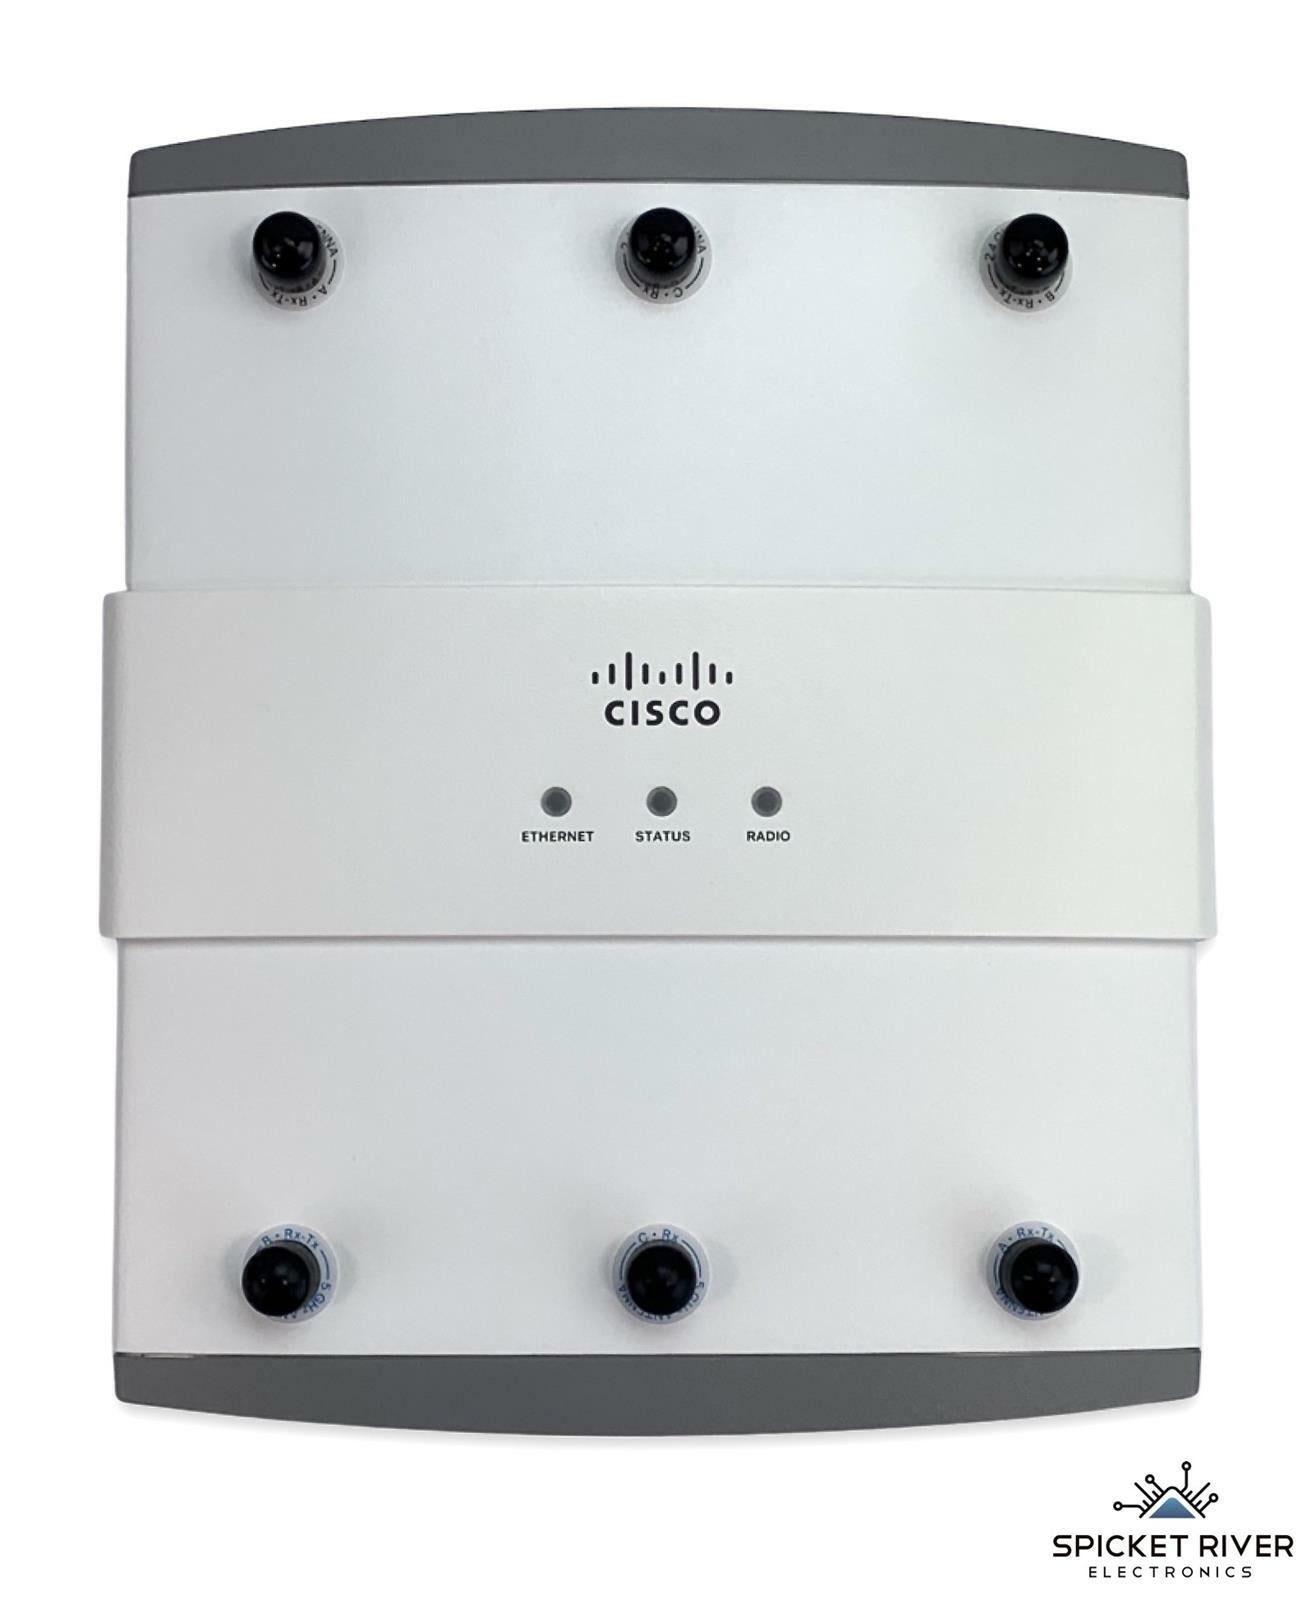 NEW - Open Box - Cisco AIR-AP1252AG-A-K9 V03 Aironet IOS Wireless Access Point